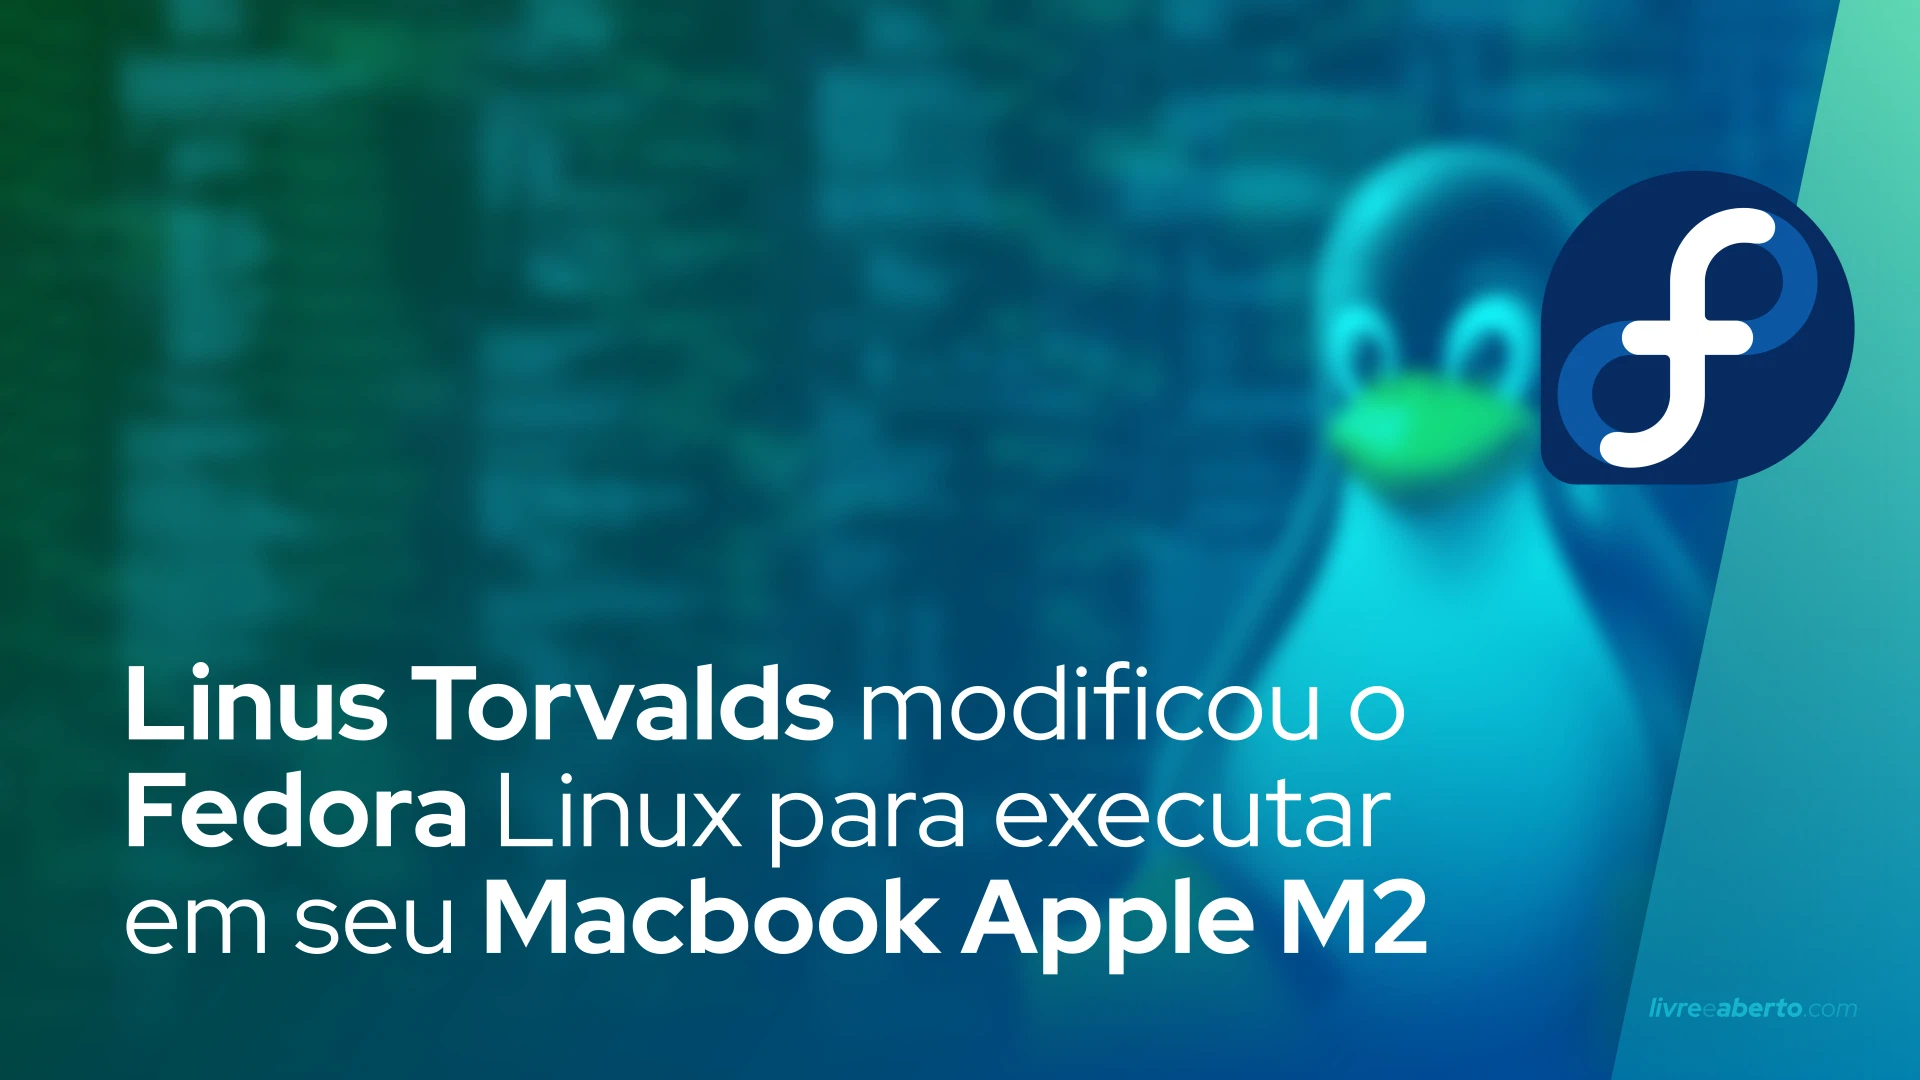 Linus Torvalds modificou o Fedora Linux para executar em seu Macbook Apple M2